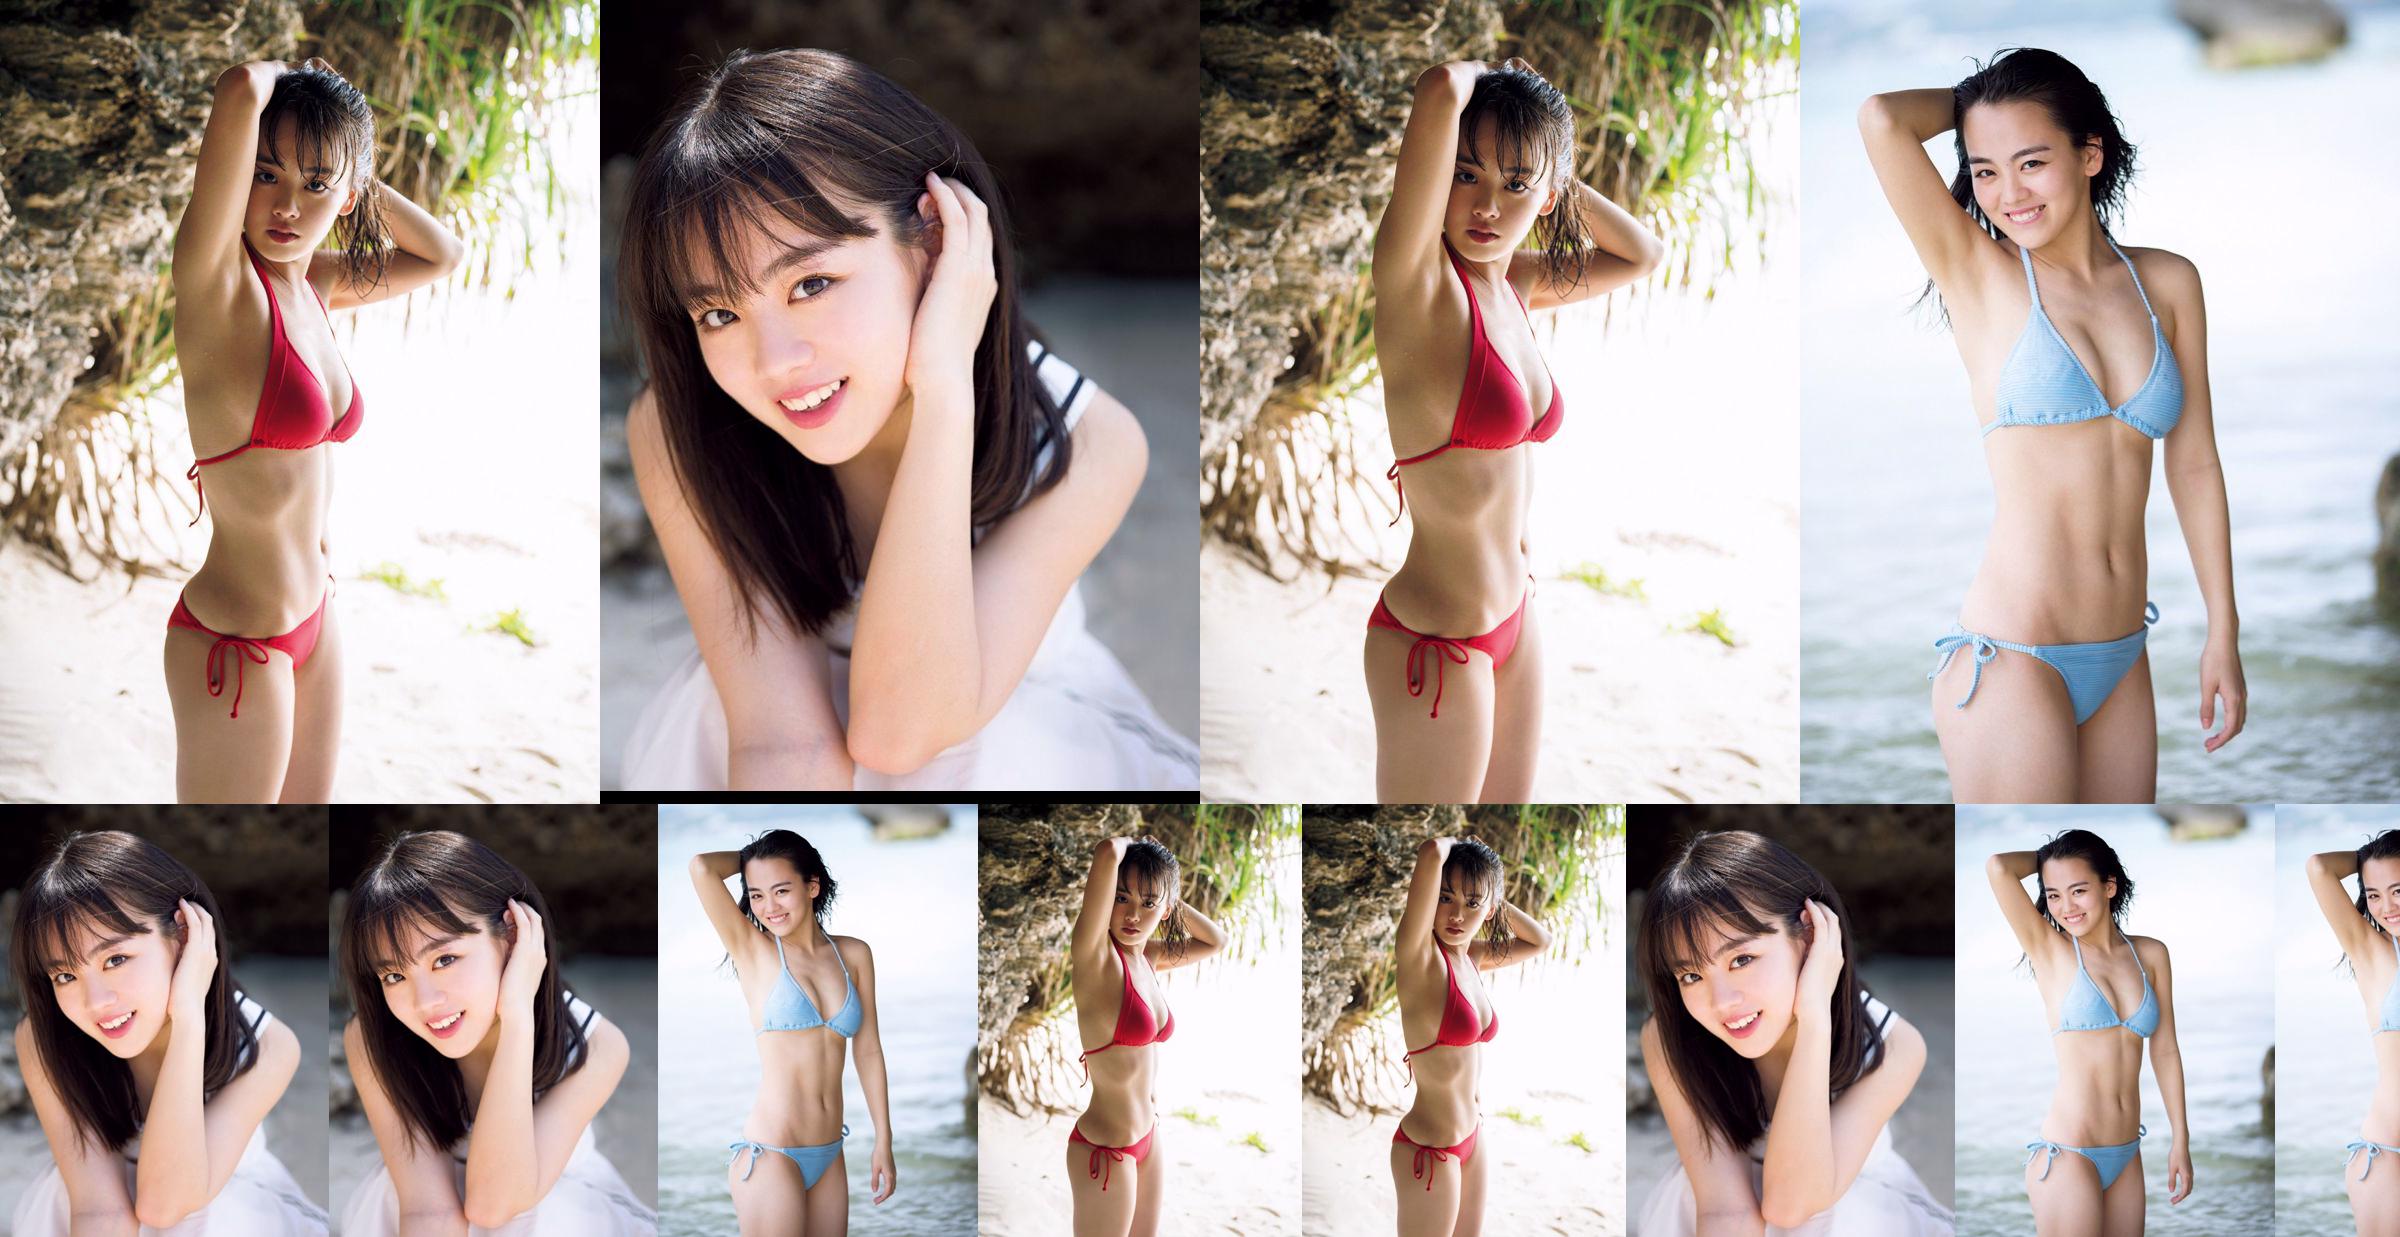 [วันศุกร์] Rikka Ihara << อดีตกัปตันชมรมเต้น Tomioka High School เปิดตัวในชุดบิกินี่ >> รูปภาพ No.843403 หน้า 1